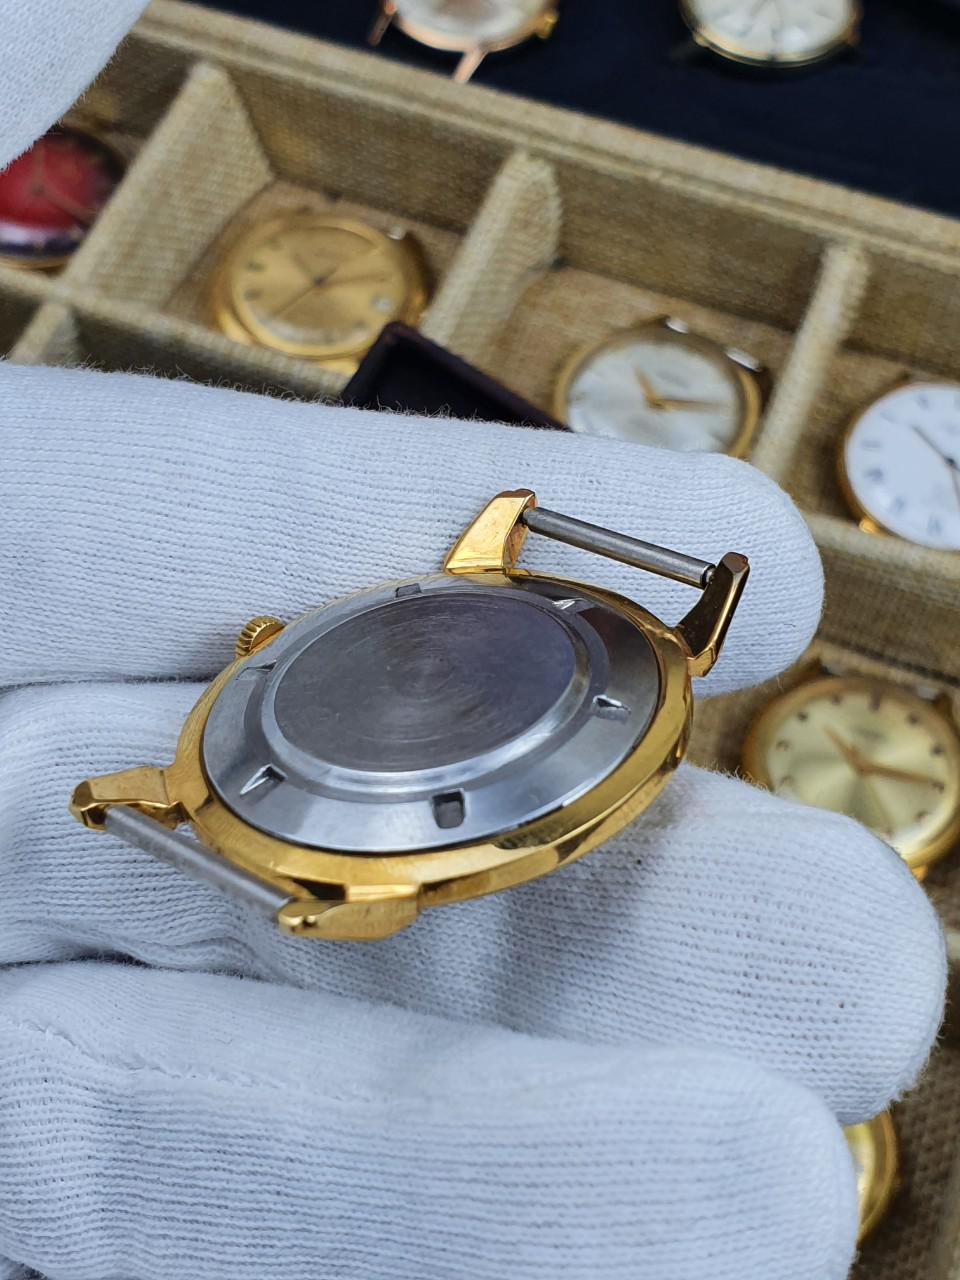 Đồng hồ Poljot cổ 17 chân kính Kirov